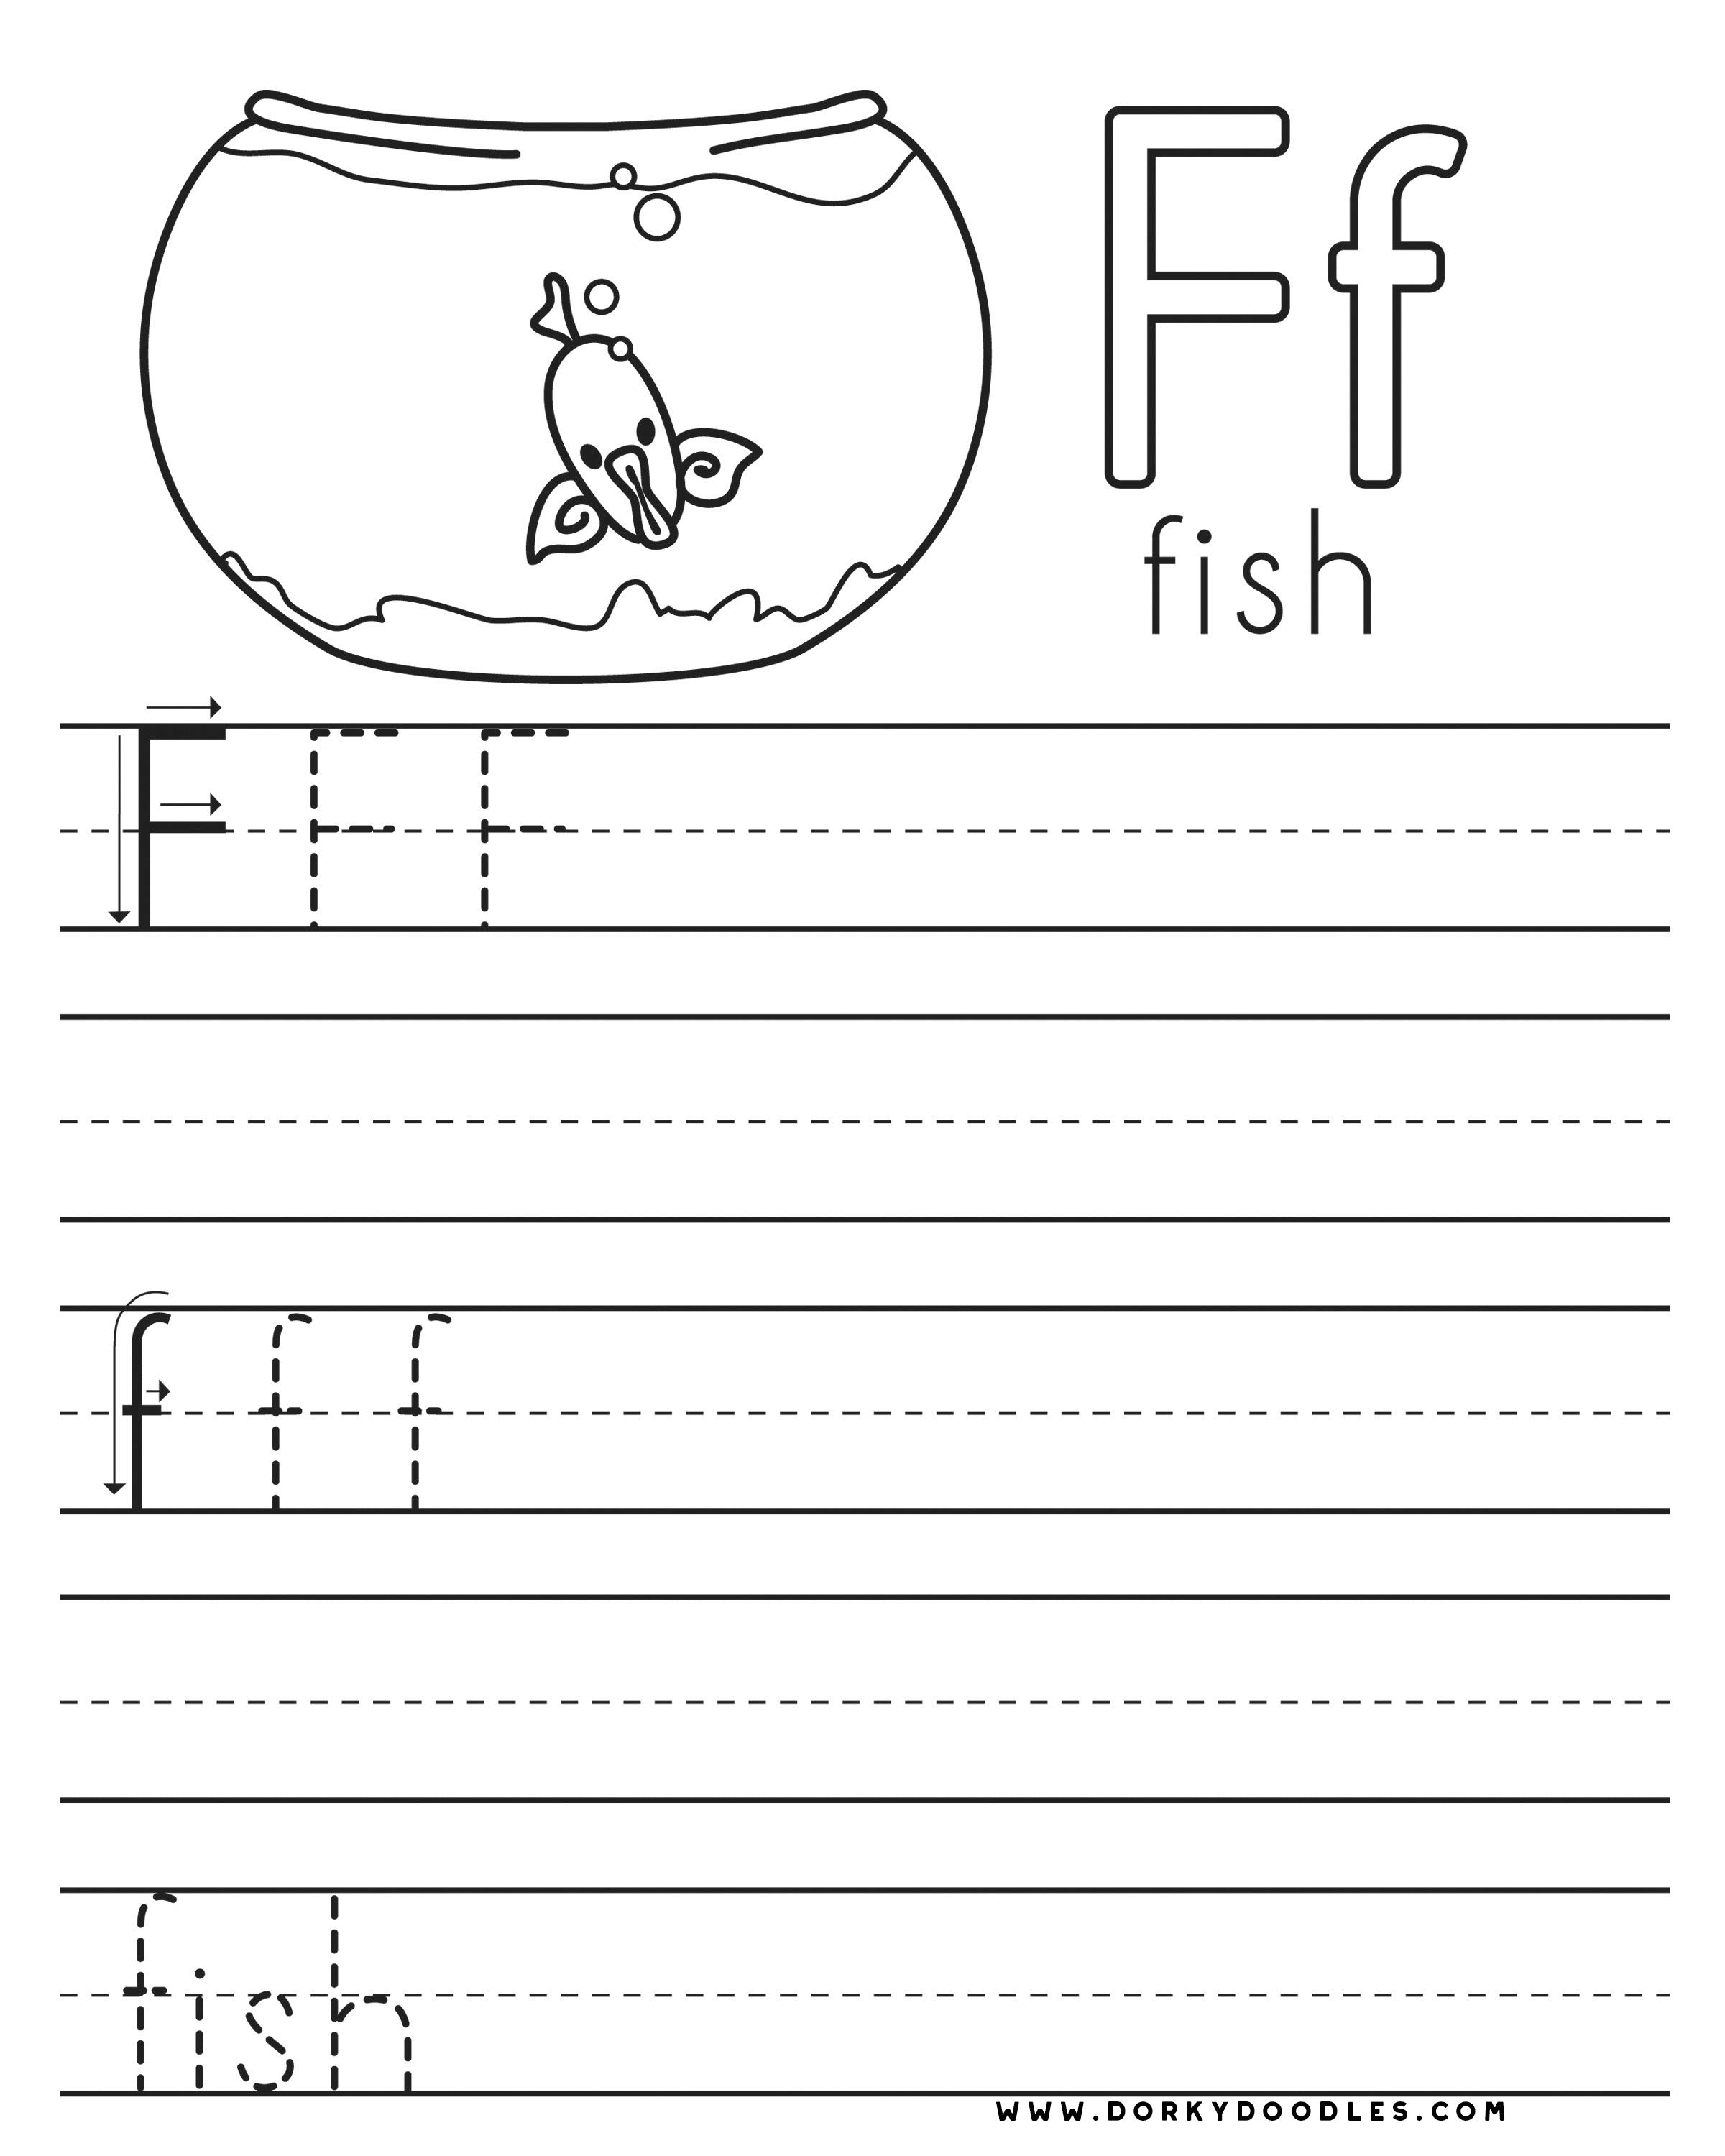 Letter practice f worksheets â dorky doodles